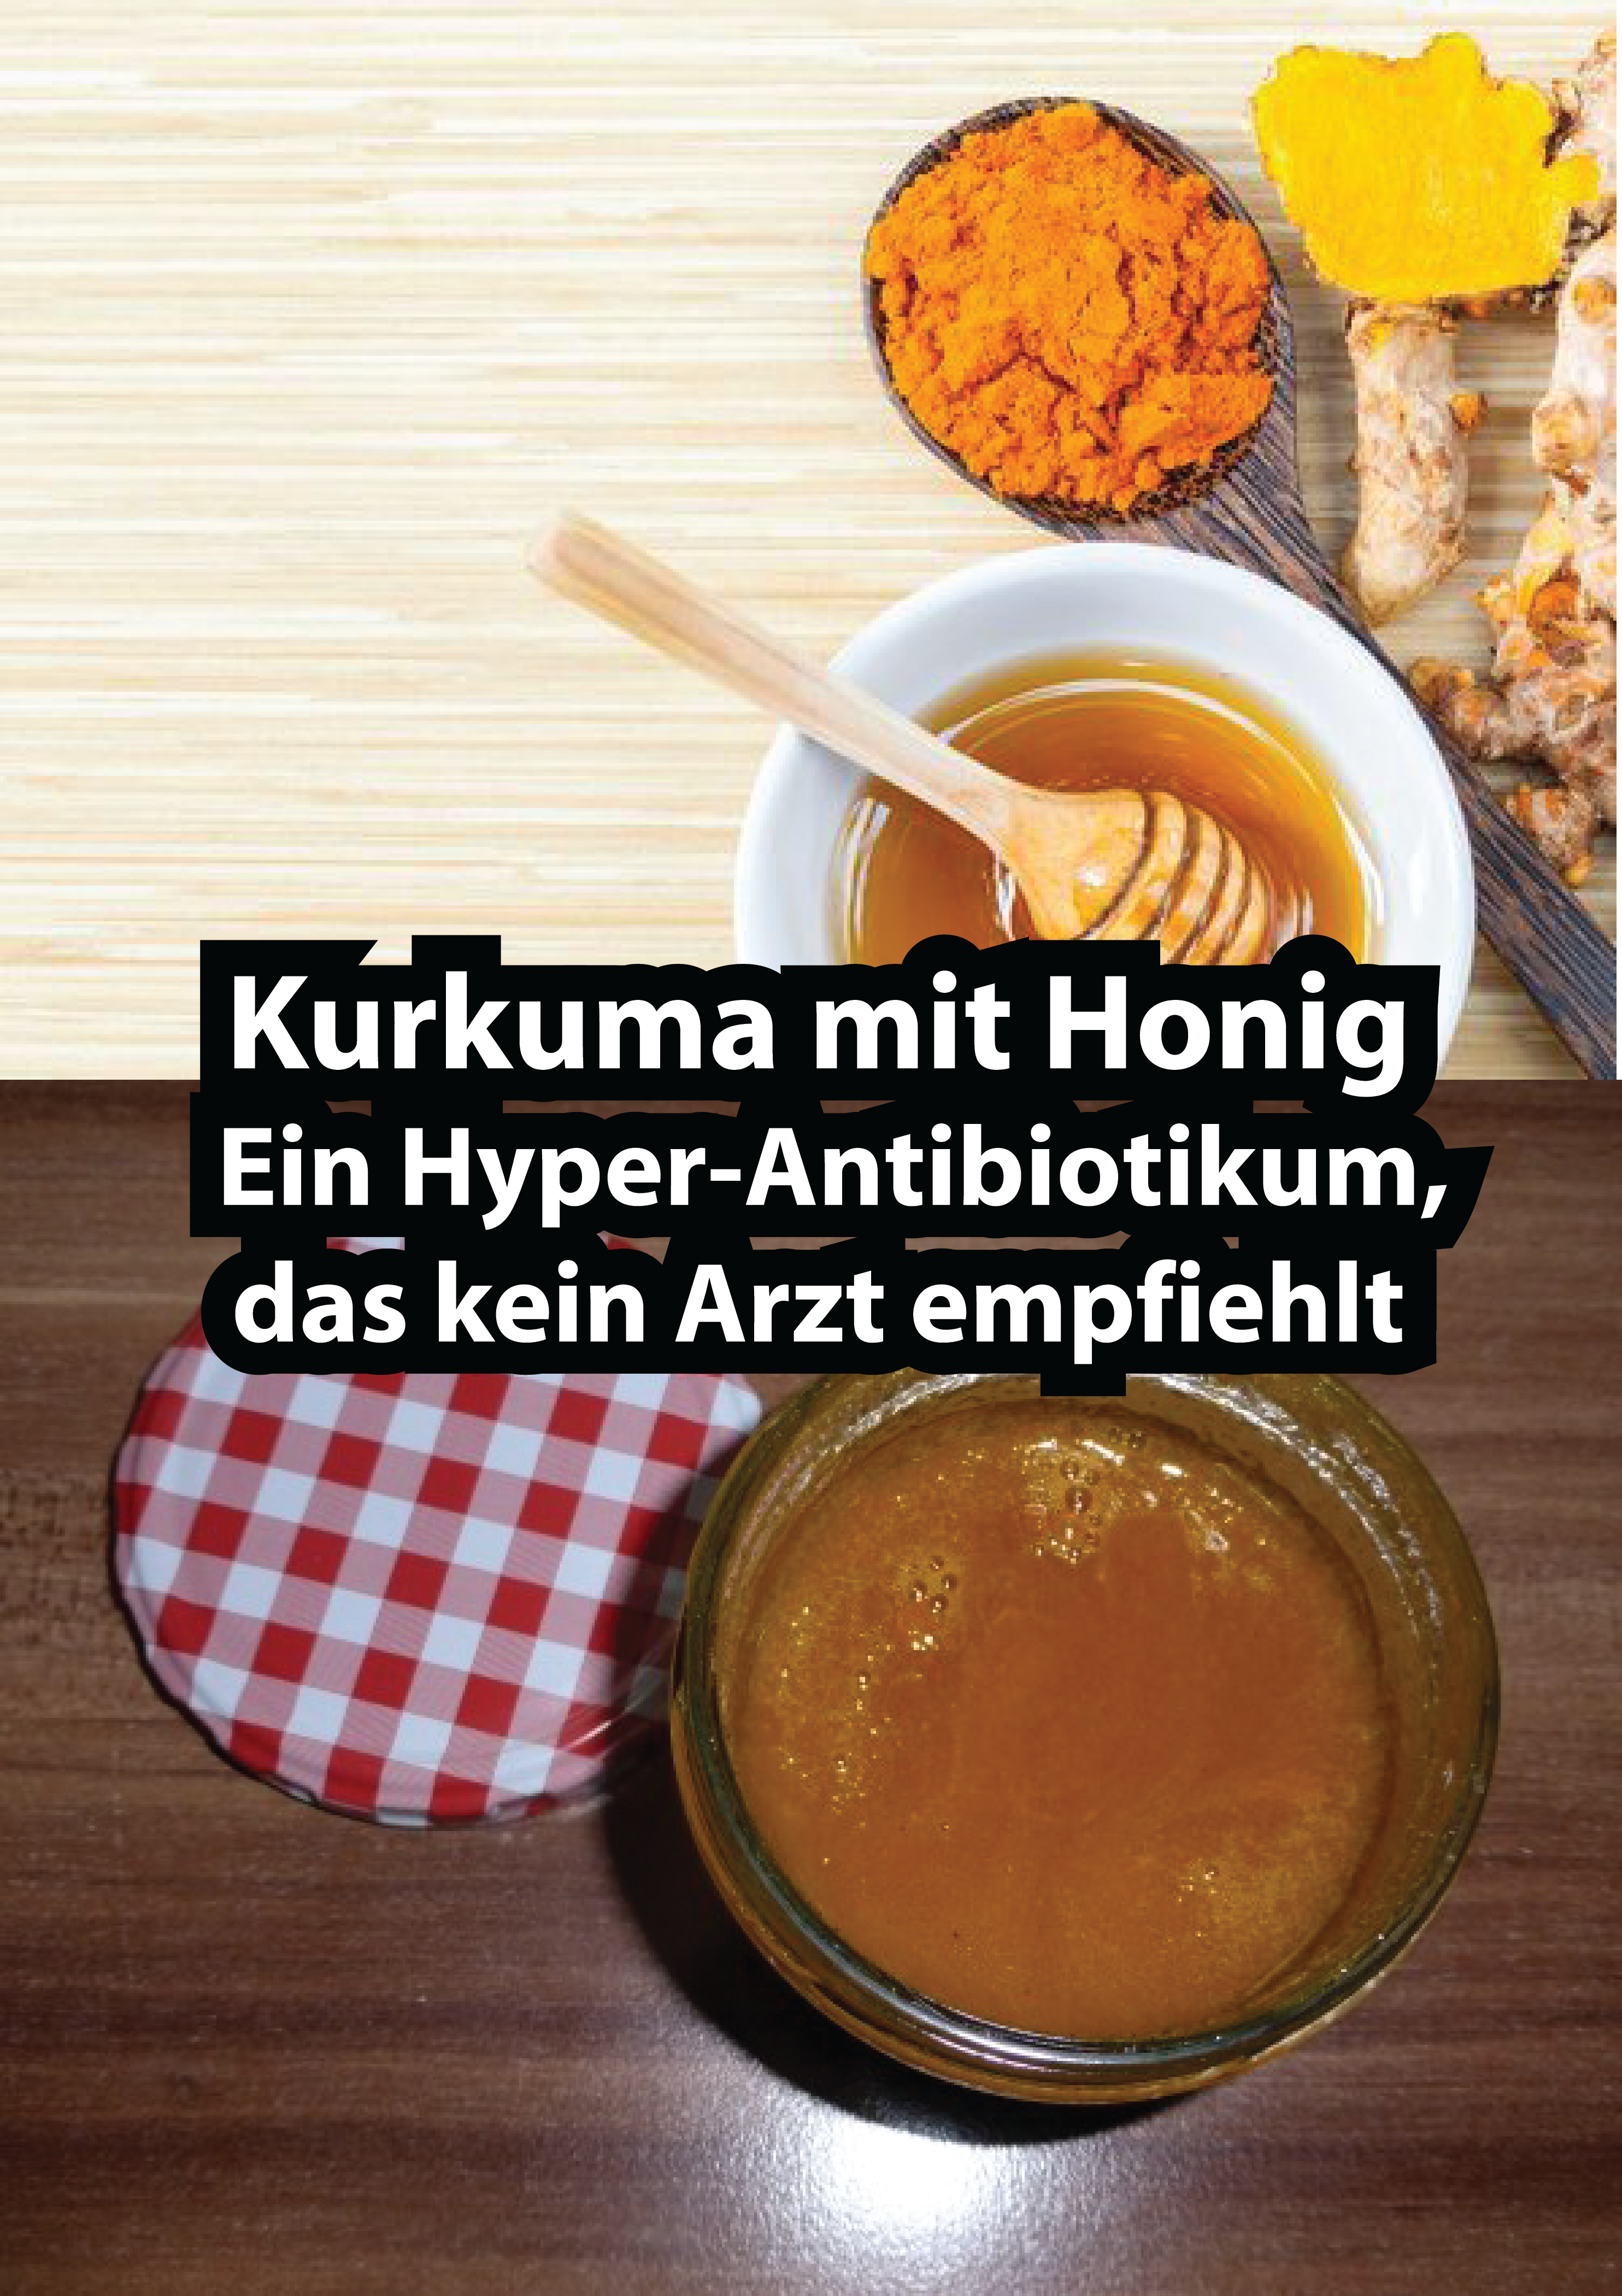 Kurkuma mit Honig – Ein Hyper-Antibiotikum, das kein Arzt empfiehlt!